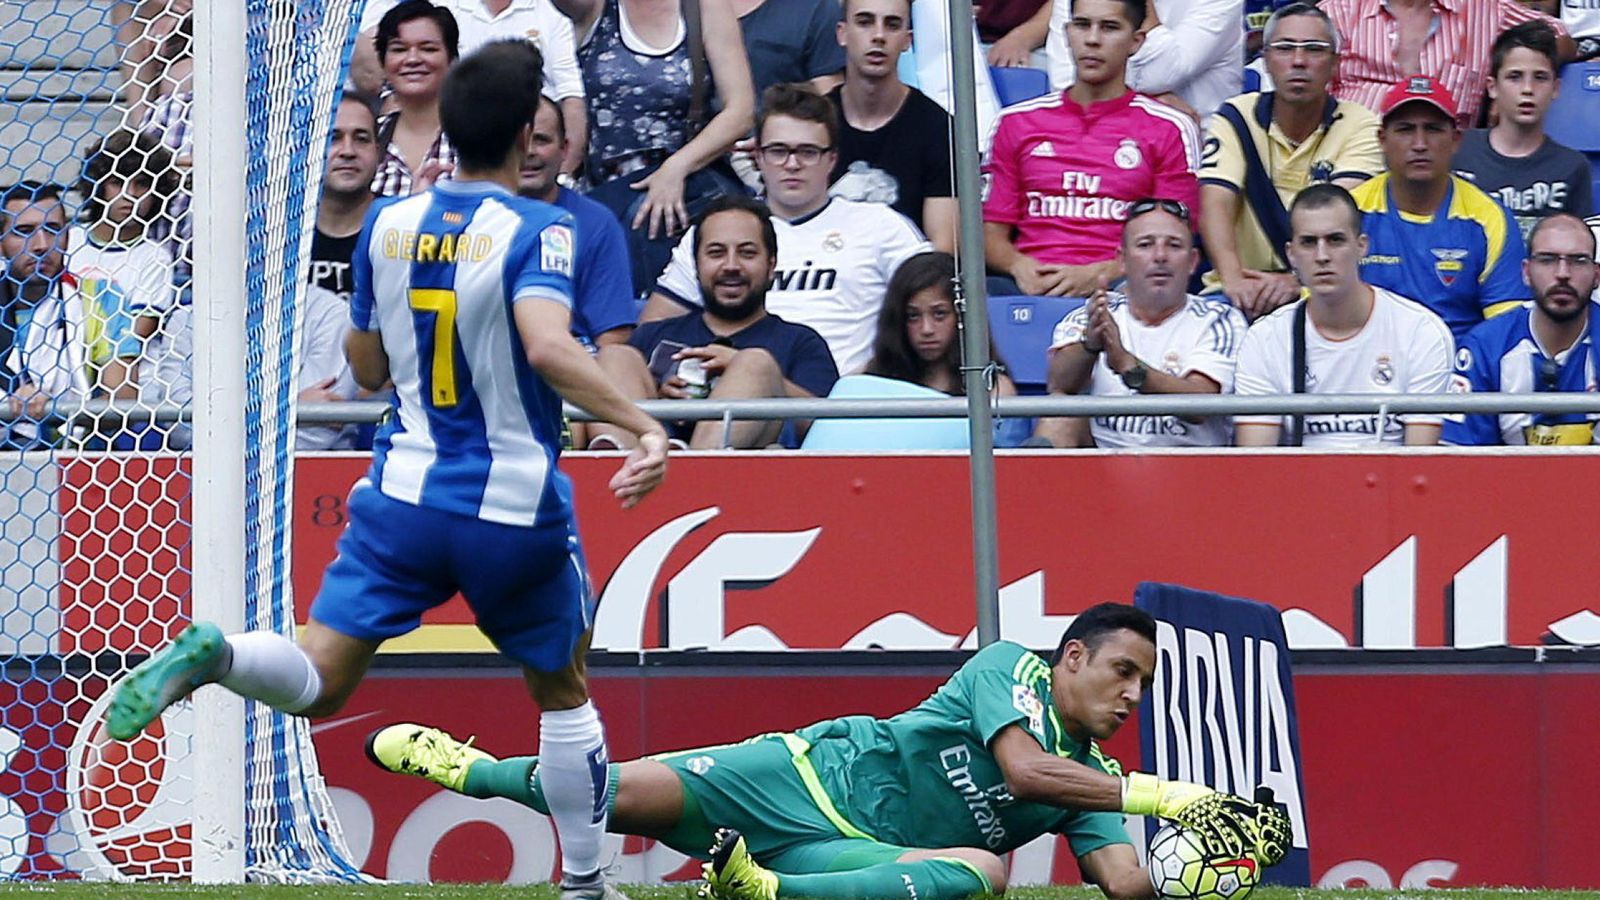 Foto: Keylor Navas, en el partido de Liga del Real Madrid contra el Espanyol.